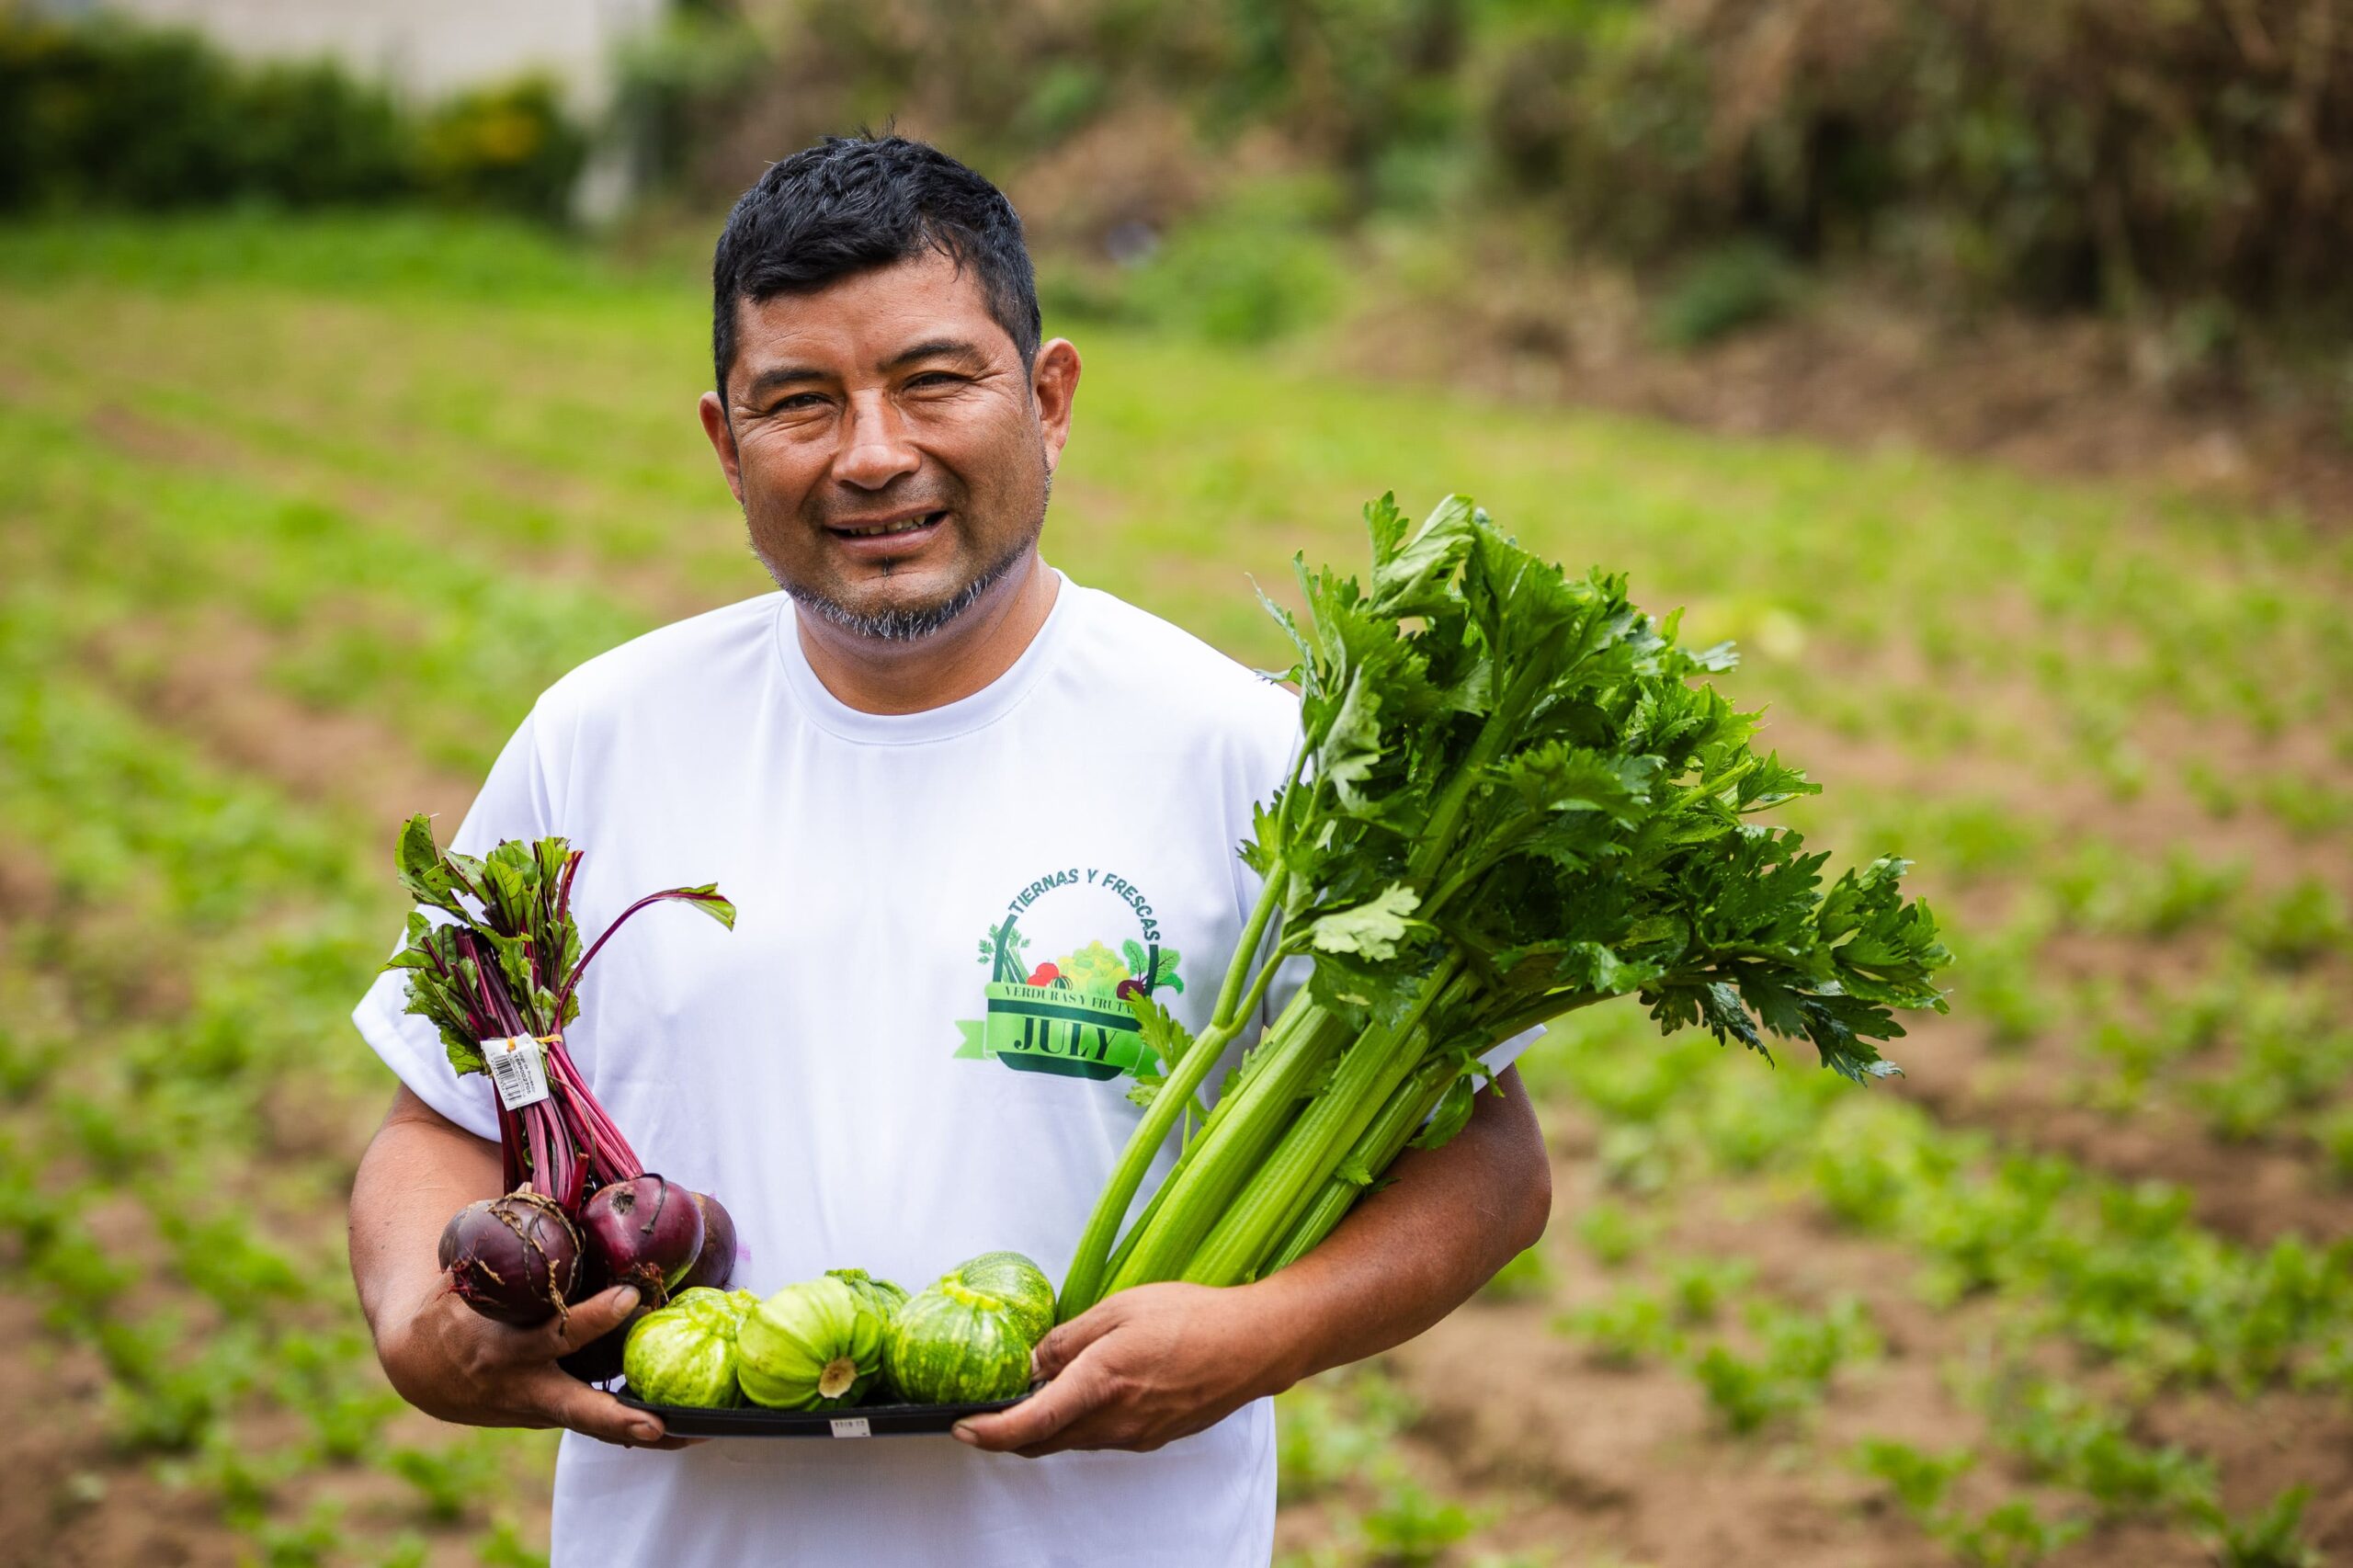 Distribuidora de Verduras July: el sueño hecho realidad de la familia Martínez y su comunidad